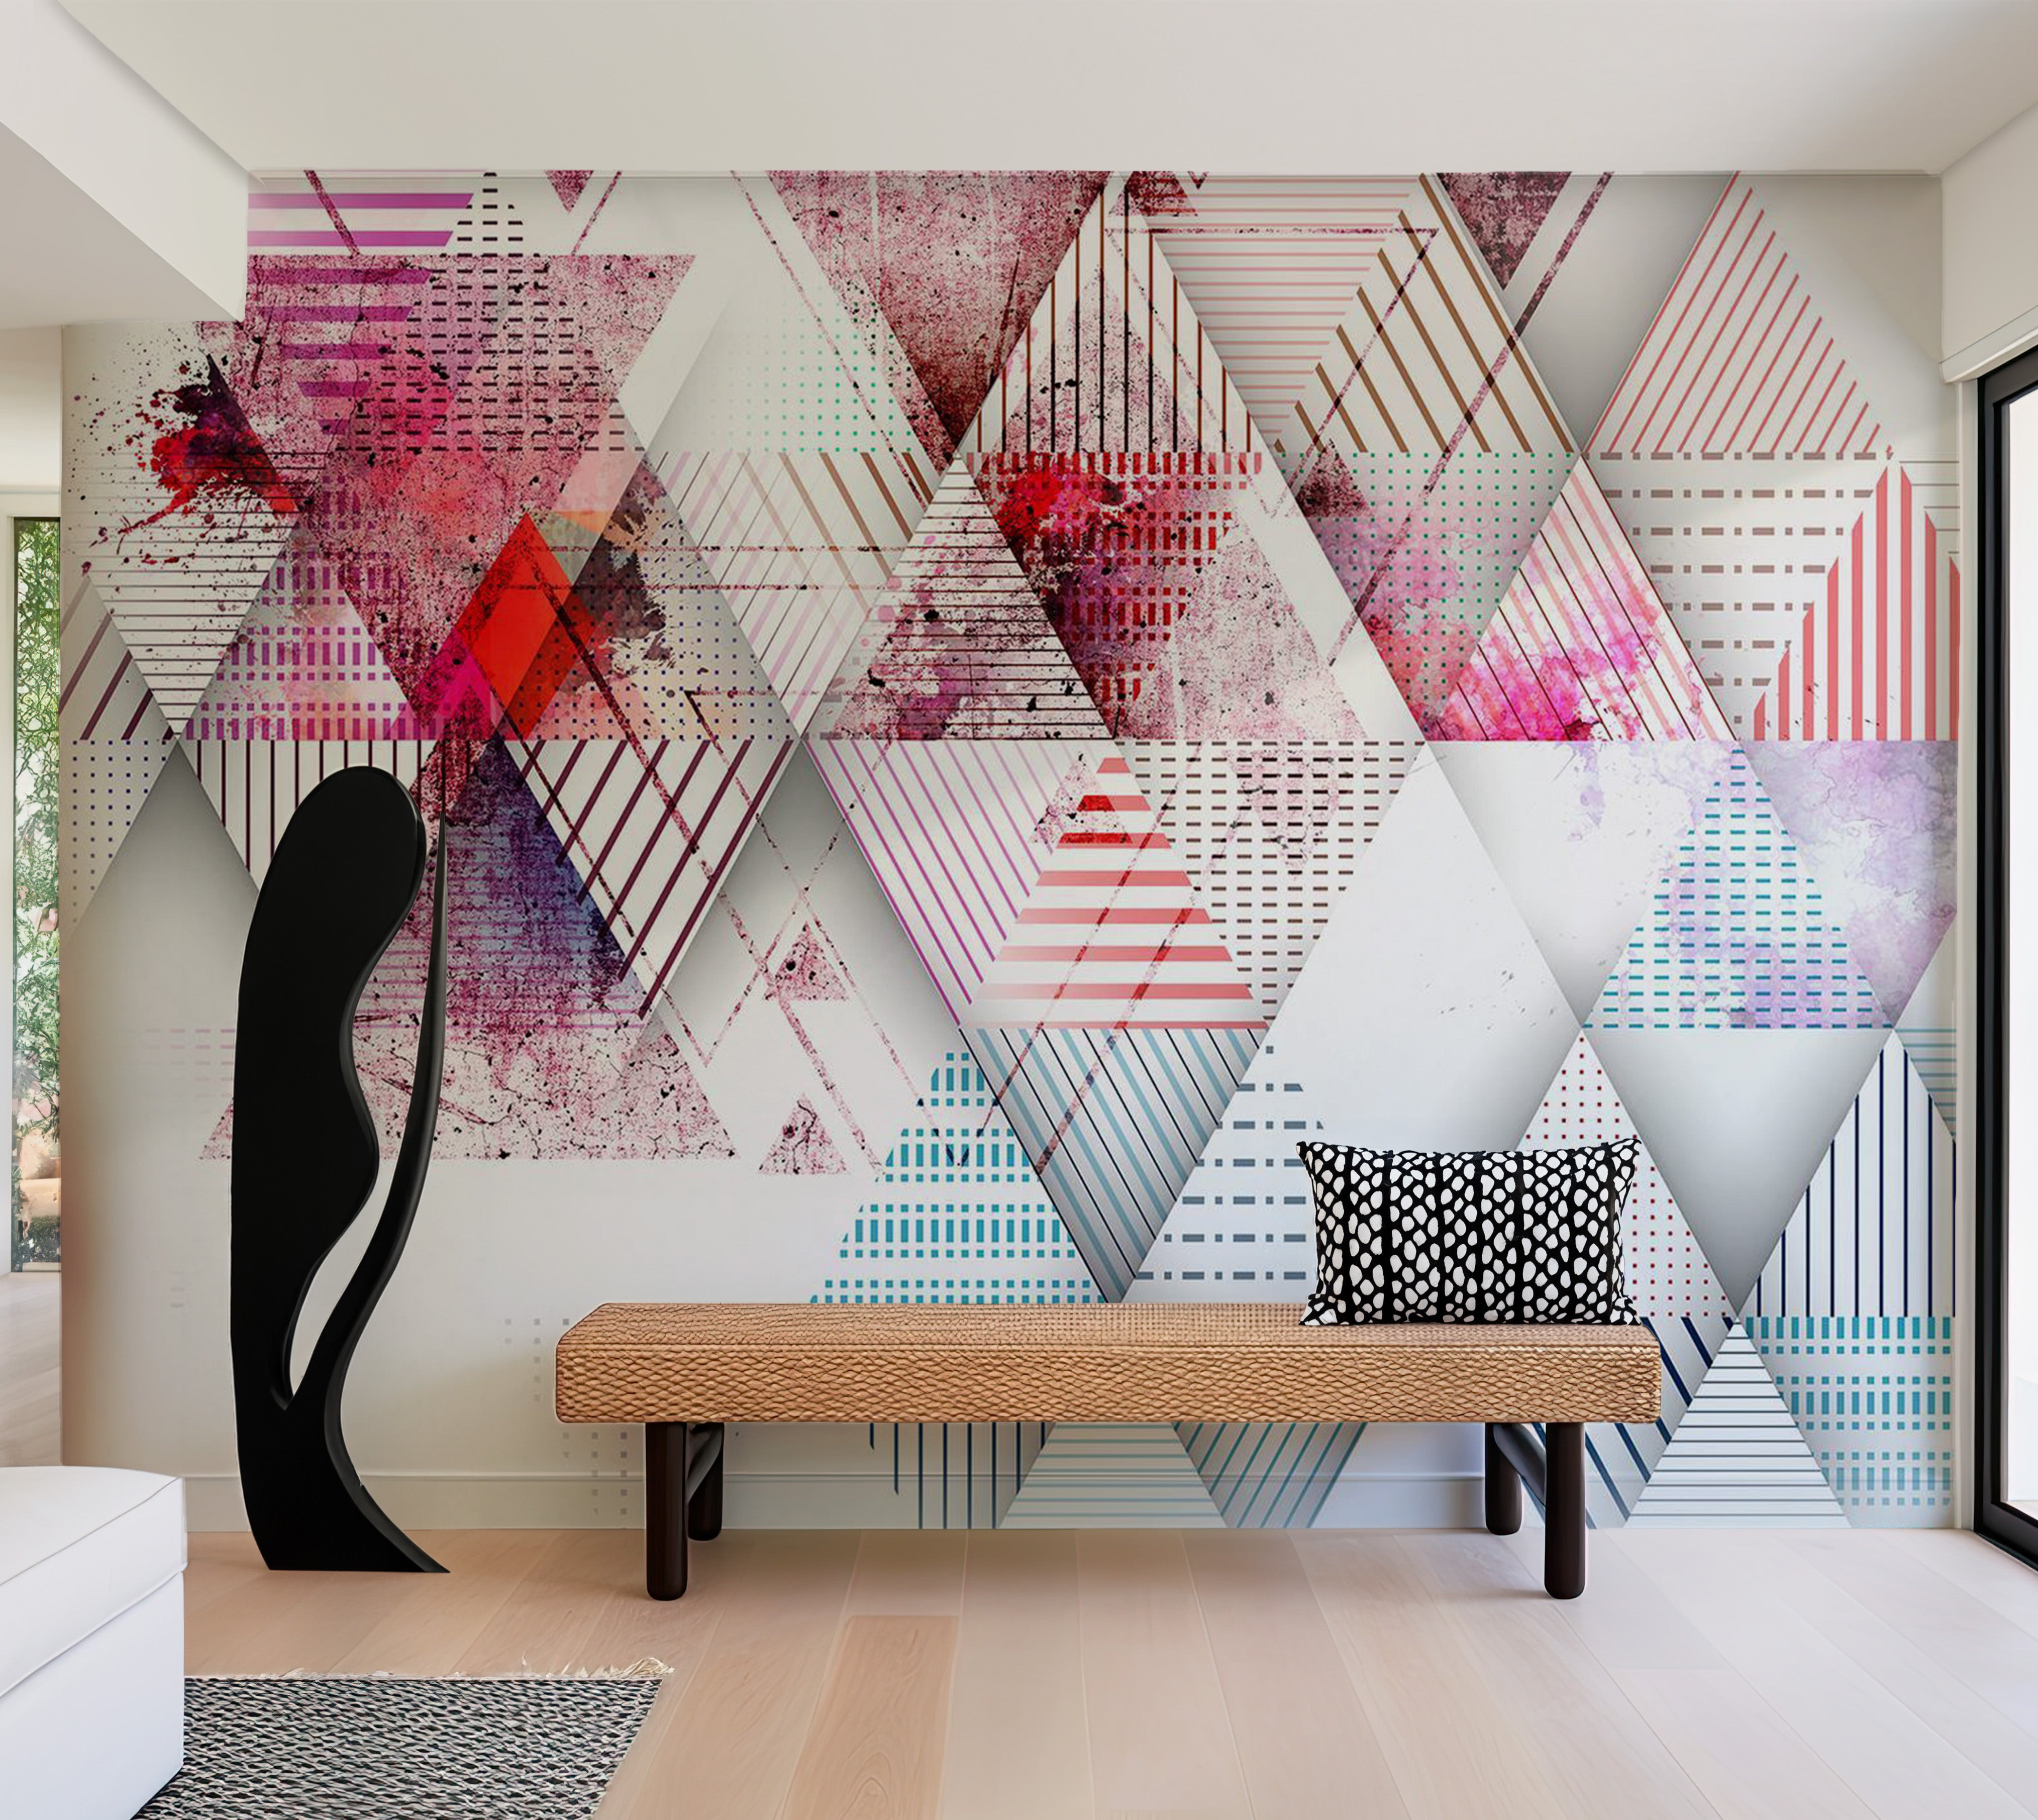 Abstract Wallpaper Wall Mural - Triangular World 39"Wx27"H